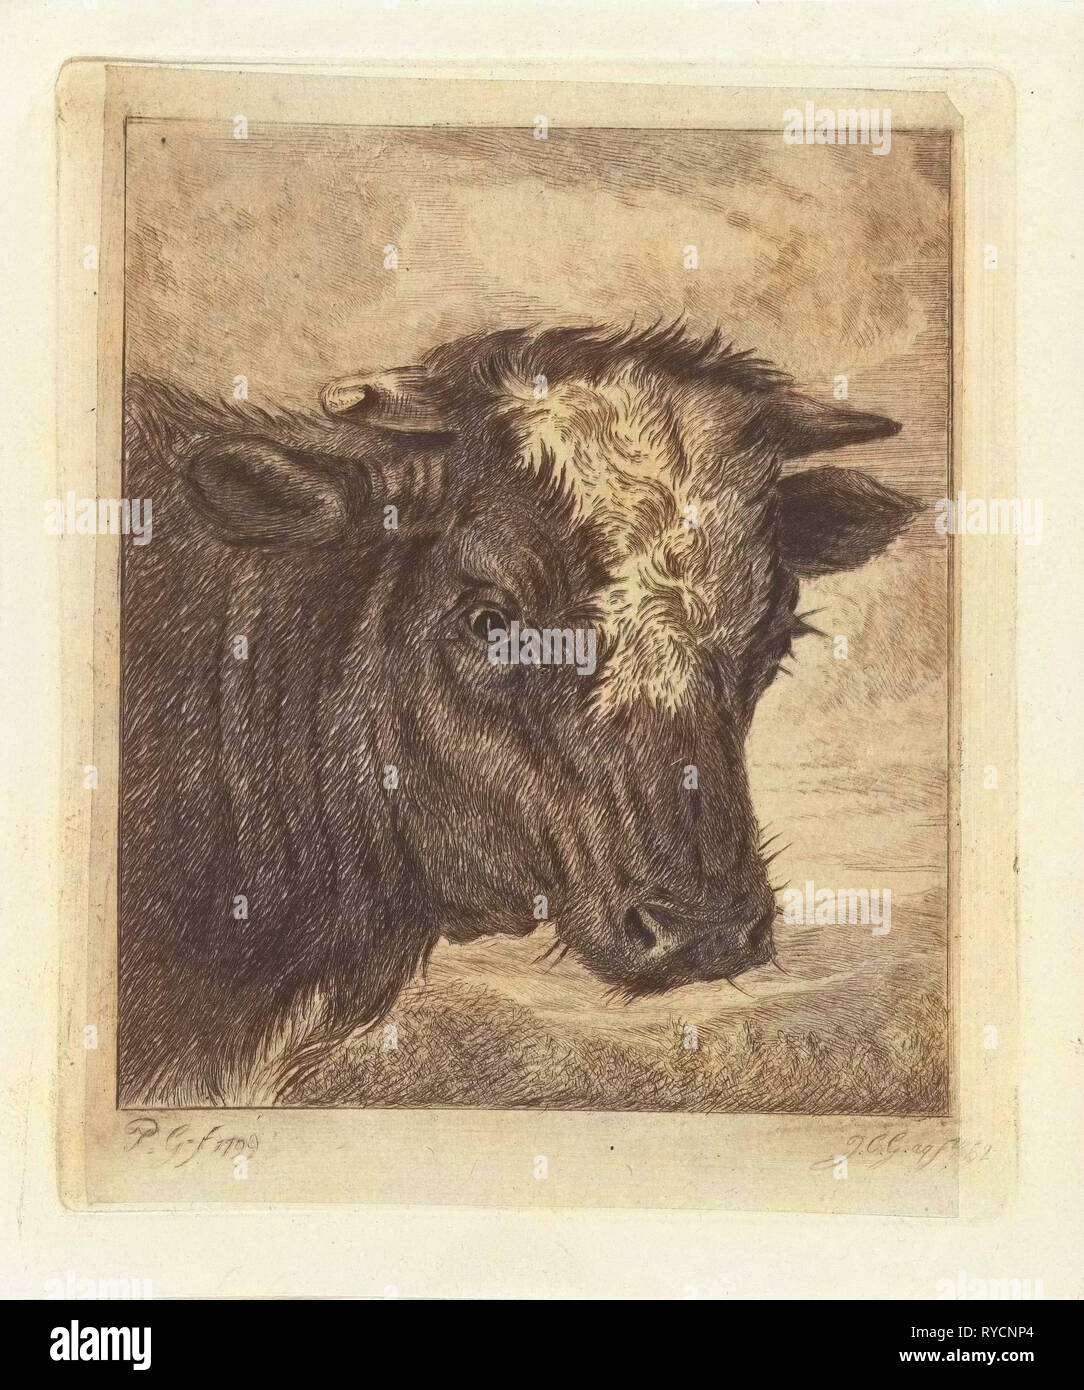 Tête d'une vache avec kol blanc, Jacobus Cornelis Gaal, 1852 Banque D'Images